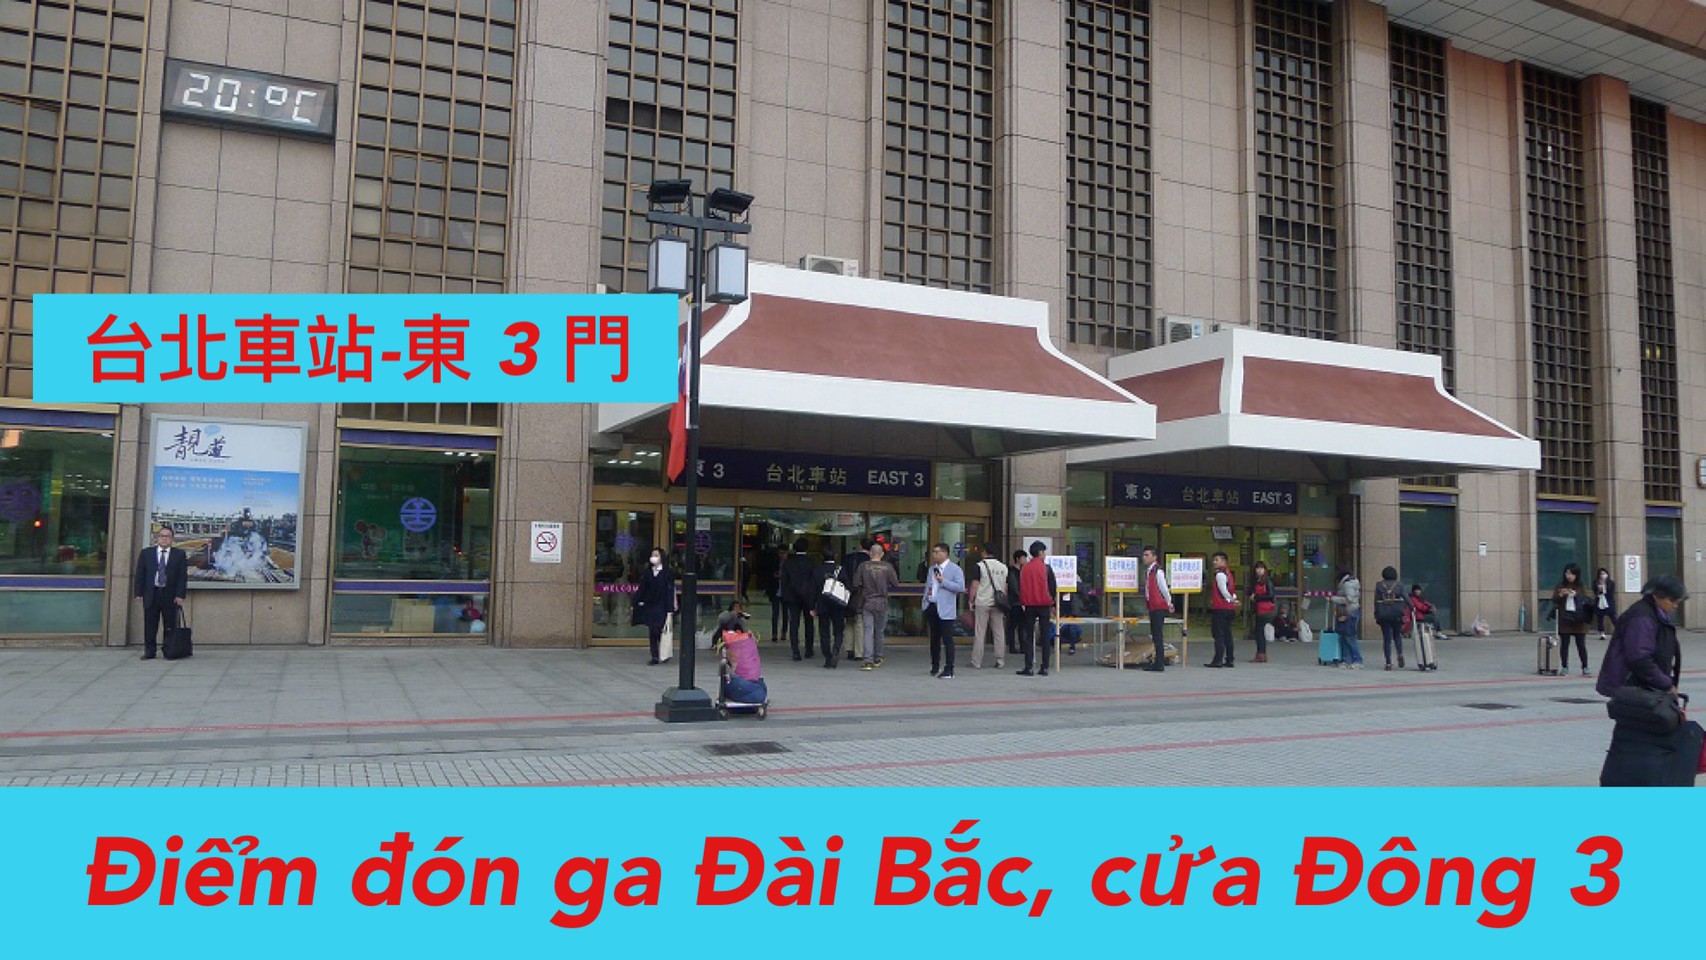  8:00 Đón ga Đài Bắc (East 3) /台北車站 